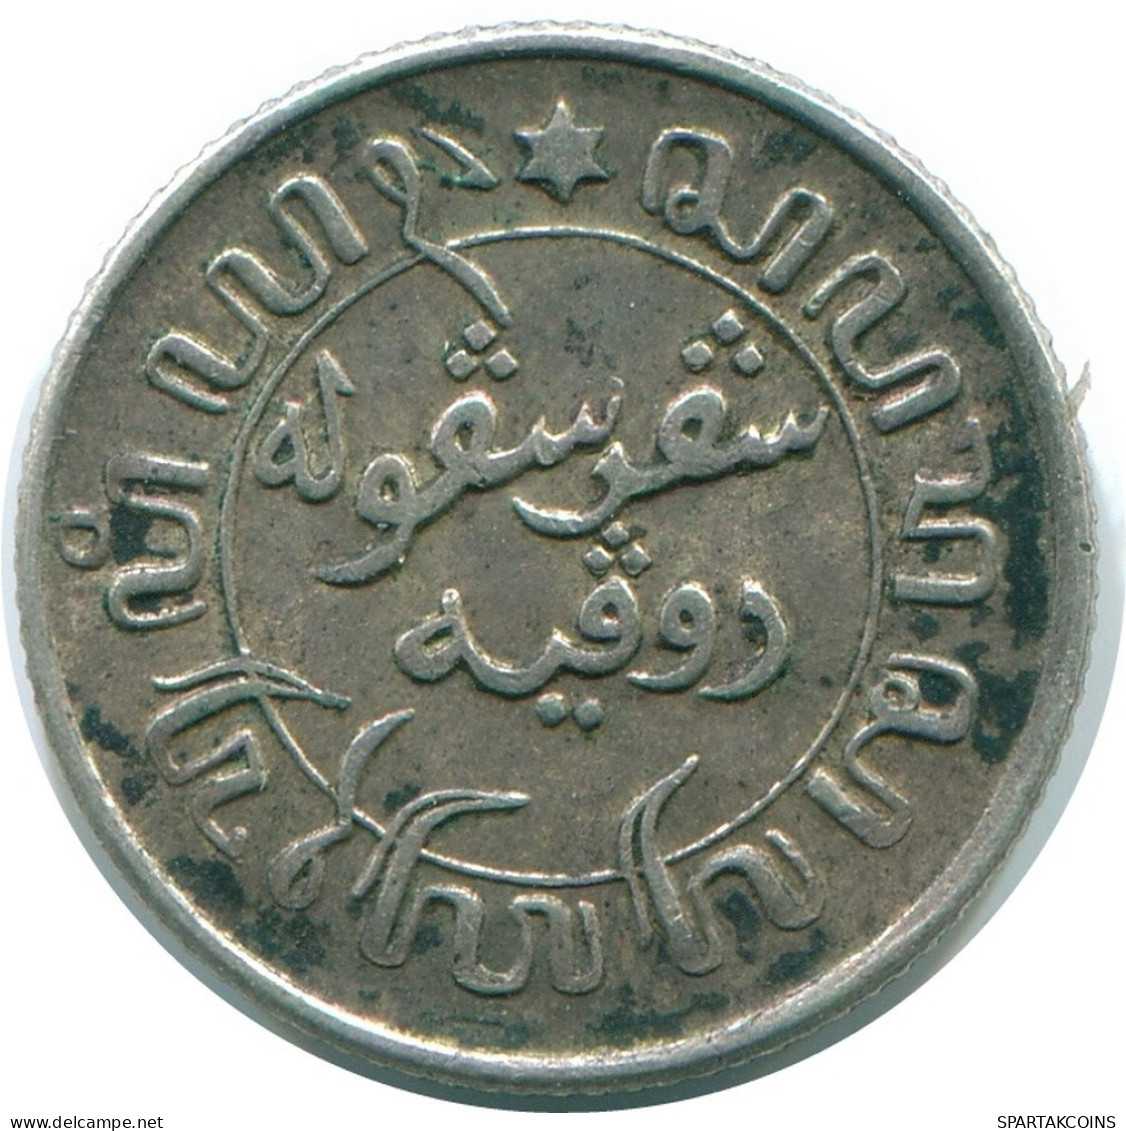 1/10 GULDEN 1945 P NETHERLANDS EAST INDIES SILVER Colonial Coin #NL14194.3.U.A - Niederländisch-Indien